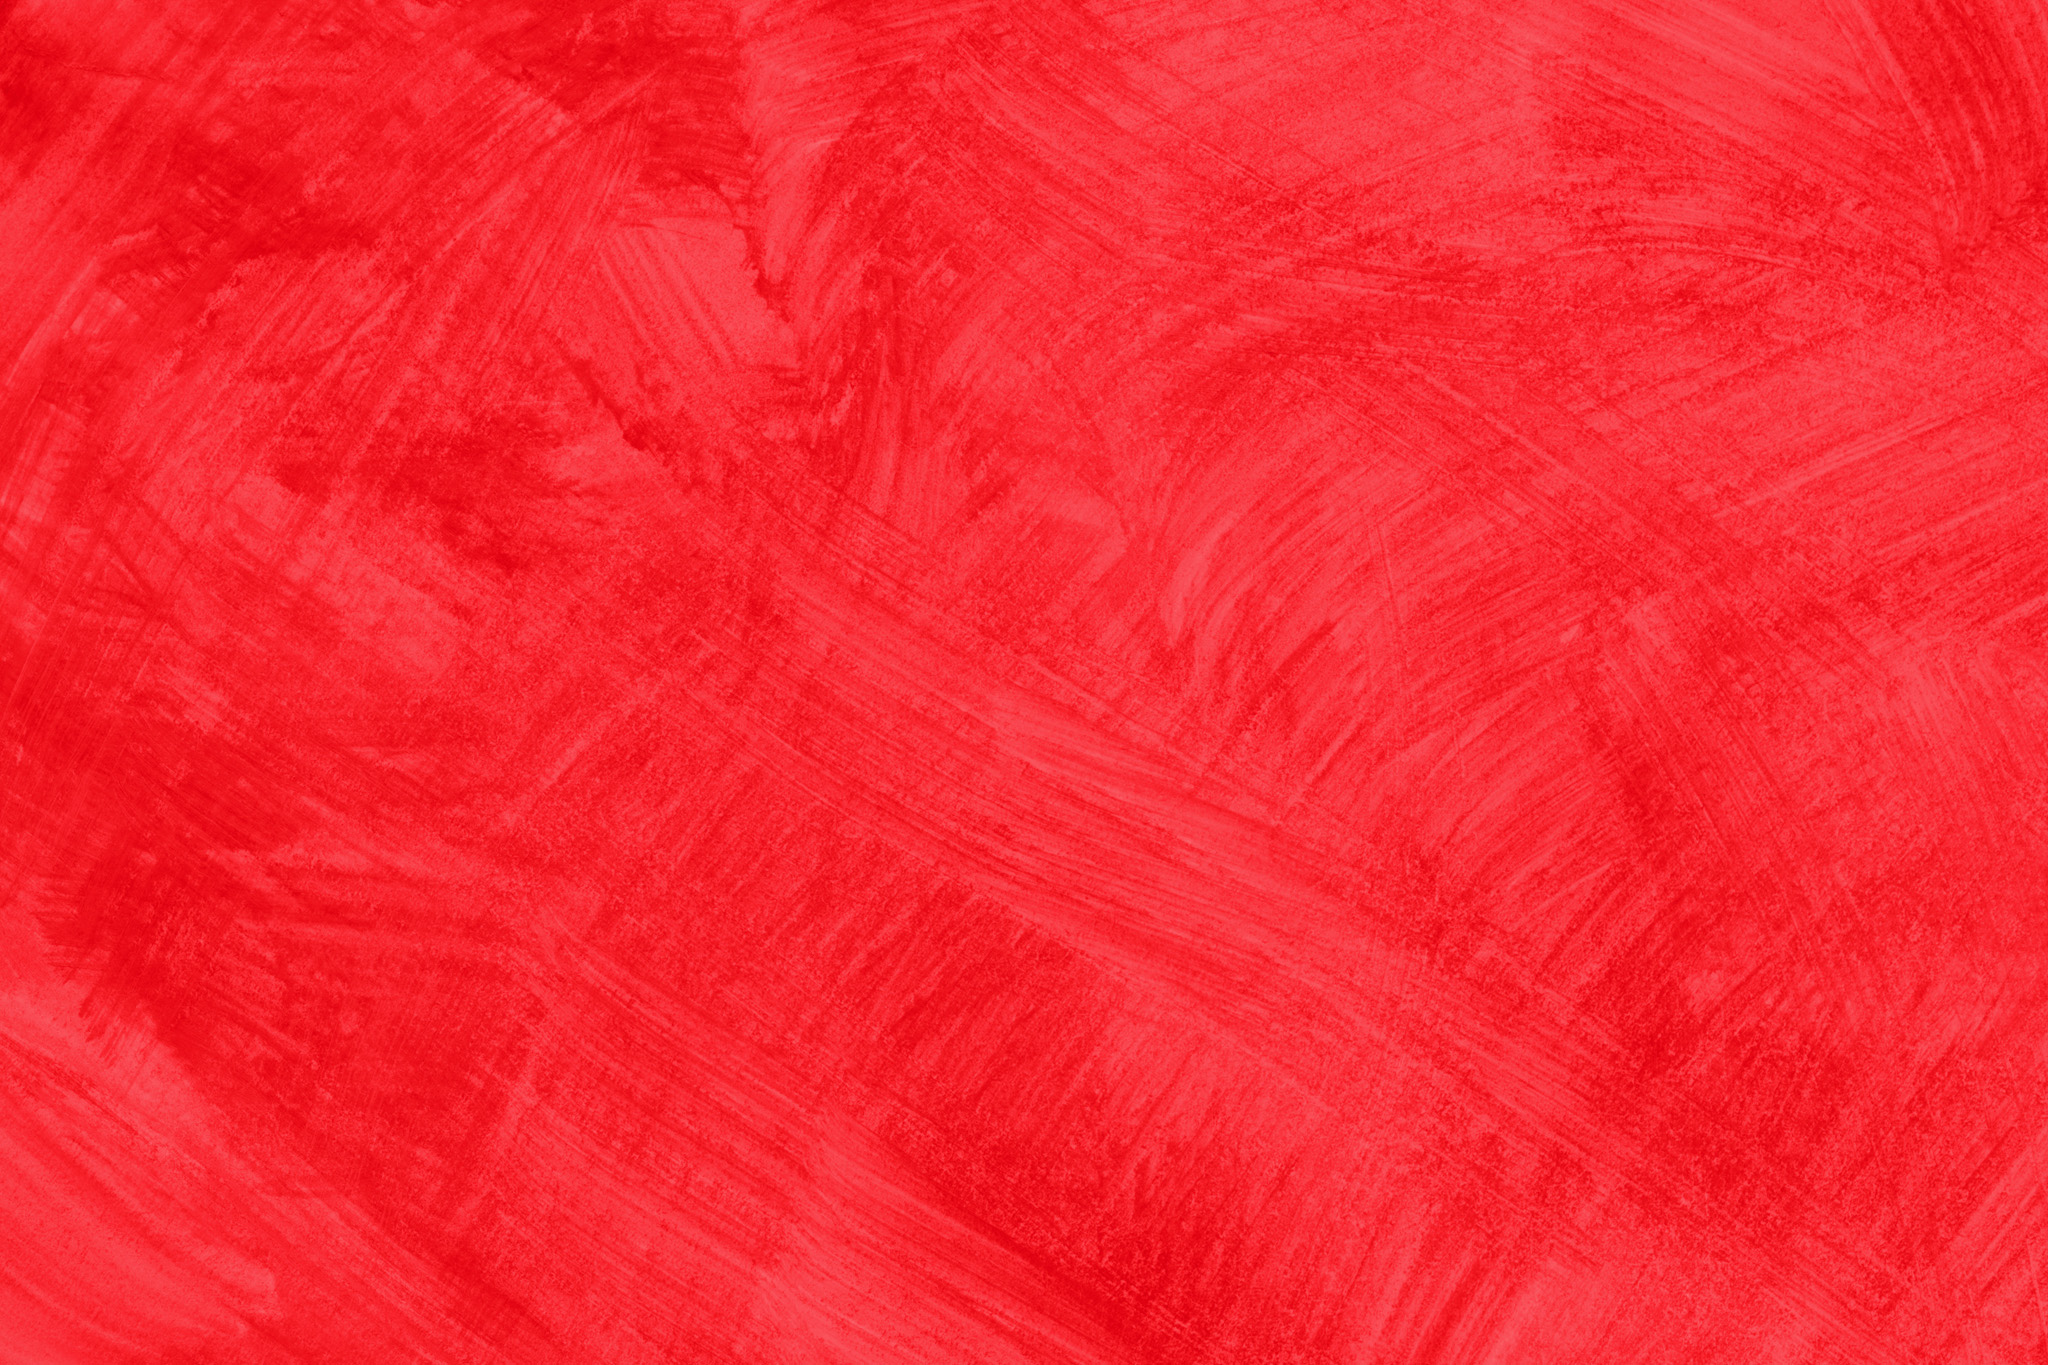 無地の赤のかっこいい壁紙 の画像素材を無料ダウンロード 1 フリー素材 Beiz Images